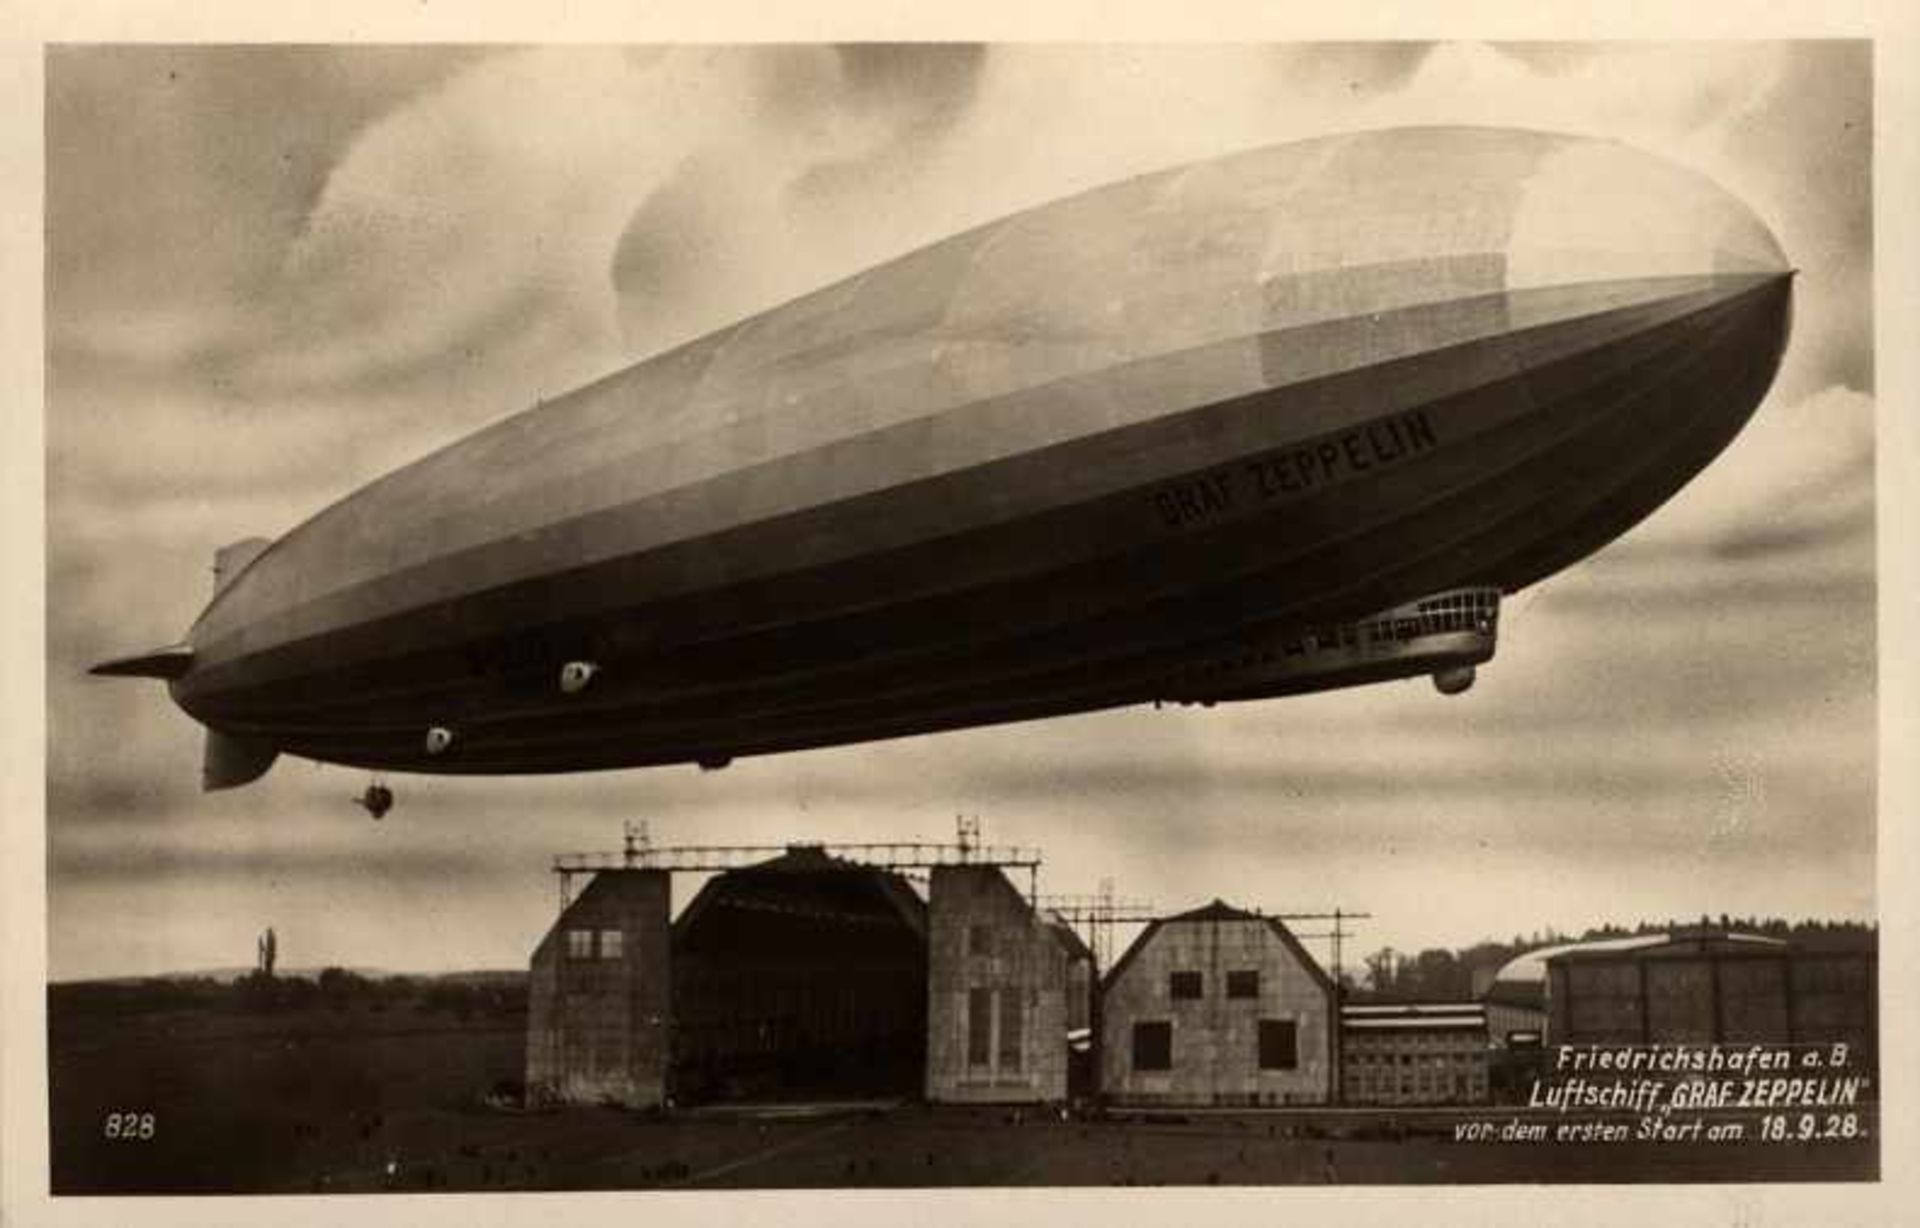 1 Postkarte, kleines Format, s/w, Friedrichshafen a. B. - Luftschiff Graf Zeppelin vor dem ersten